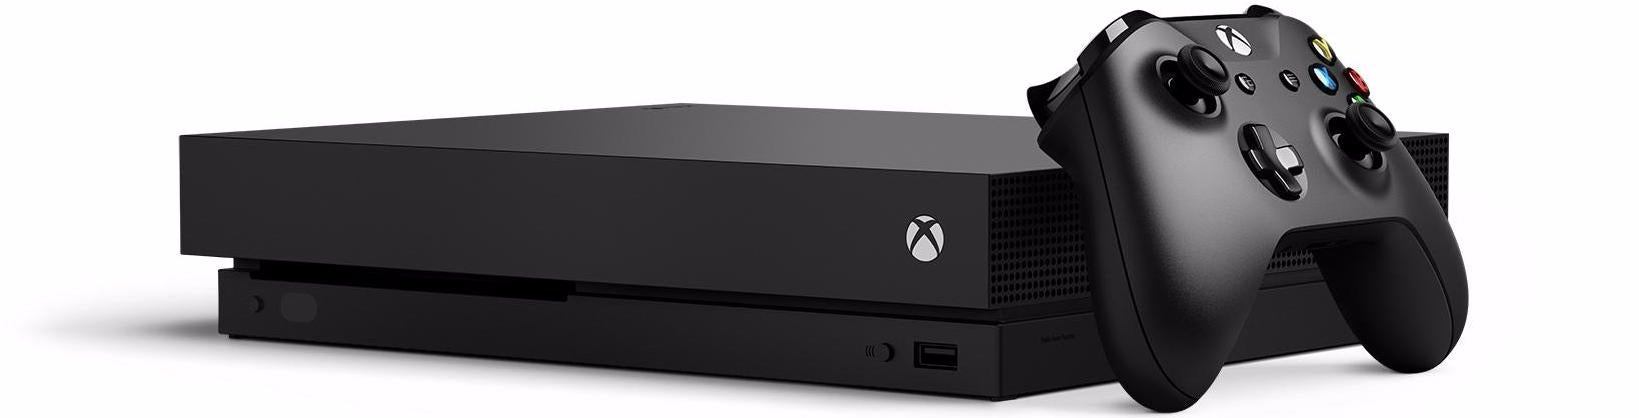 Immagine di Xbox One X costa $500, quindi quanto costeranno le console next-gen? - articolo